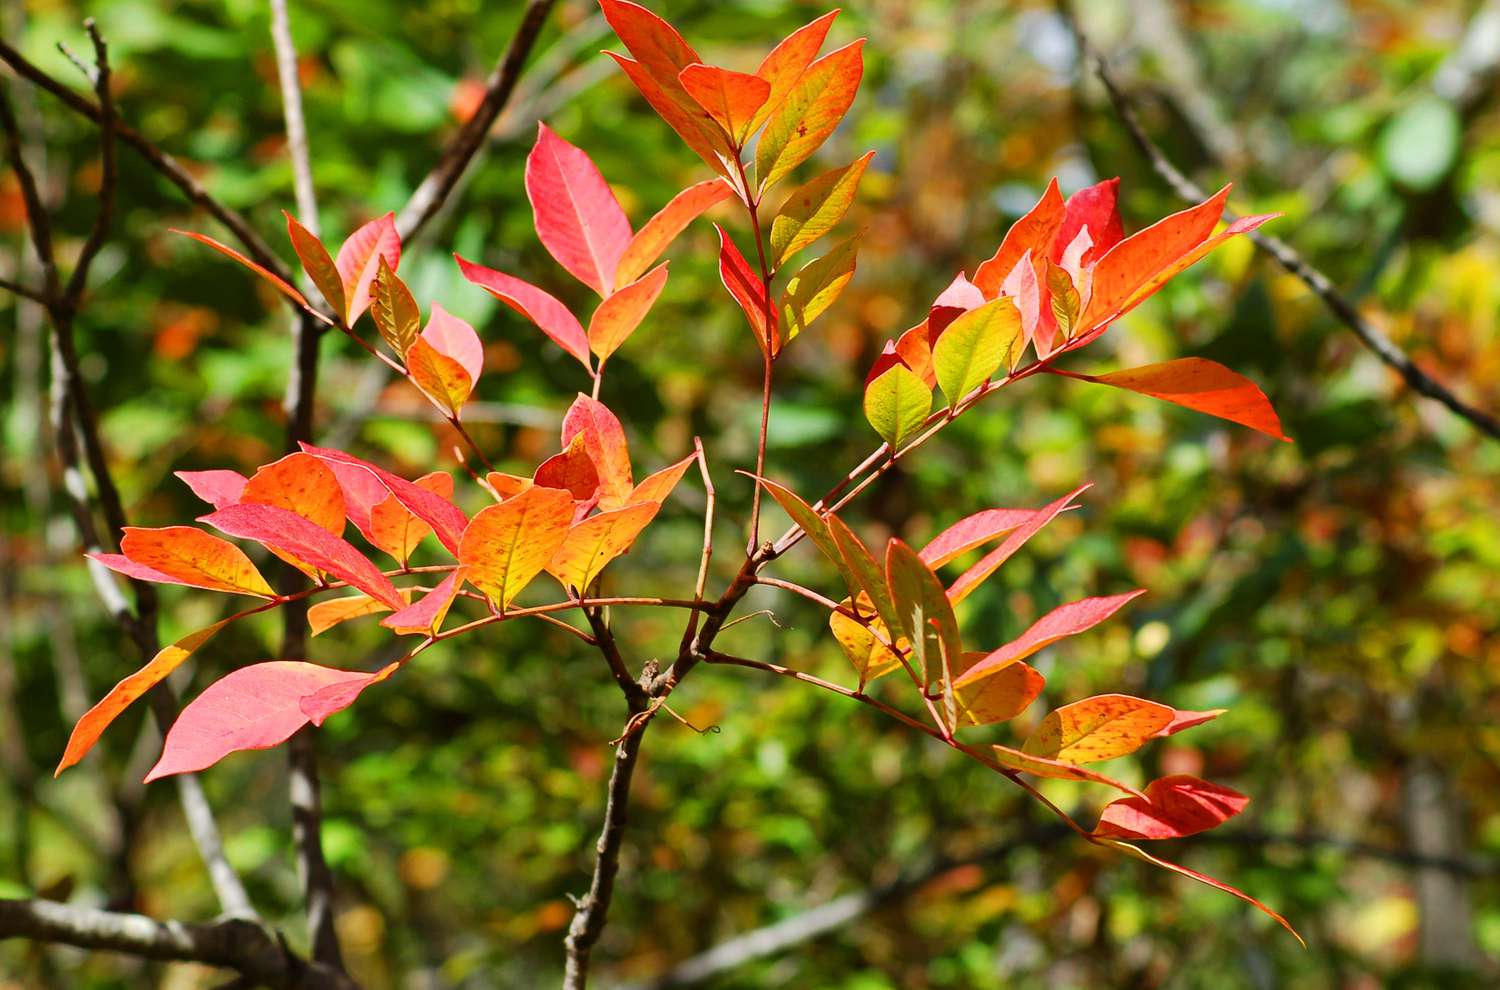 Herbstlaub von Giftsumach in verschiedenen Farben.